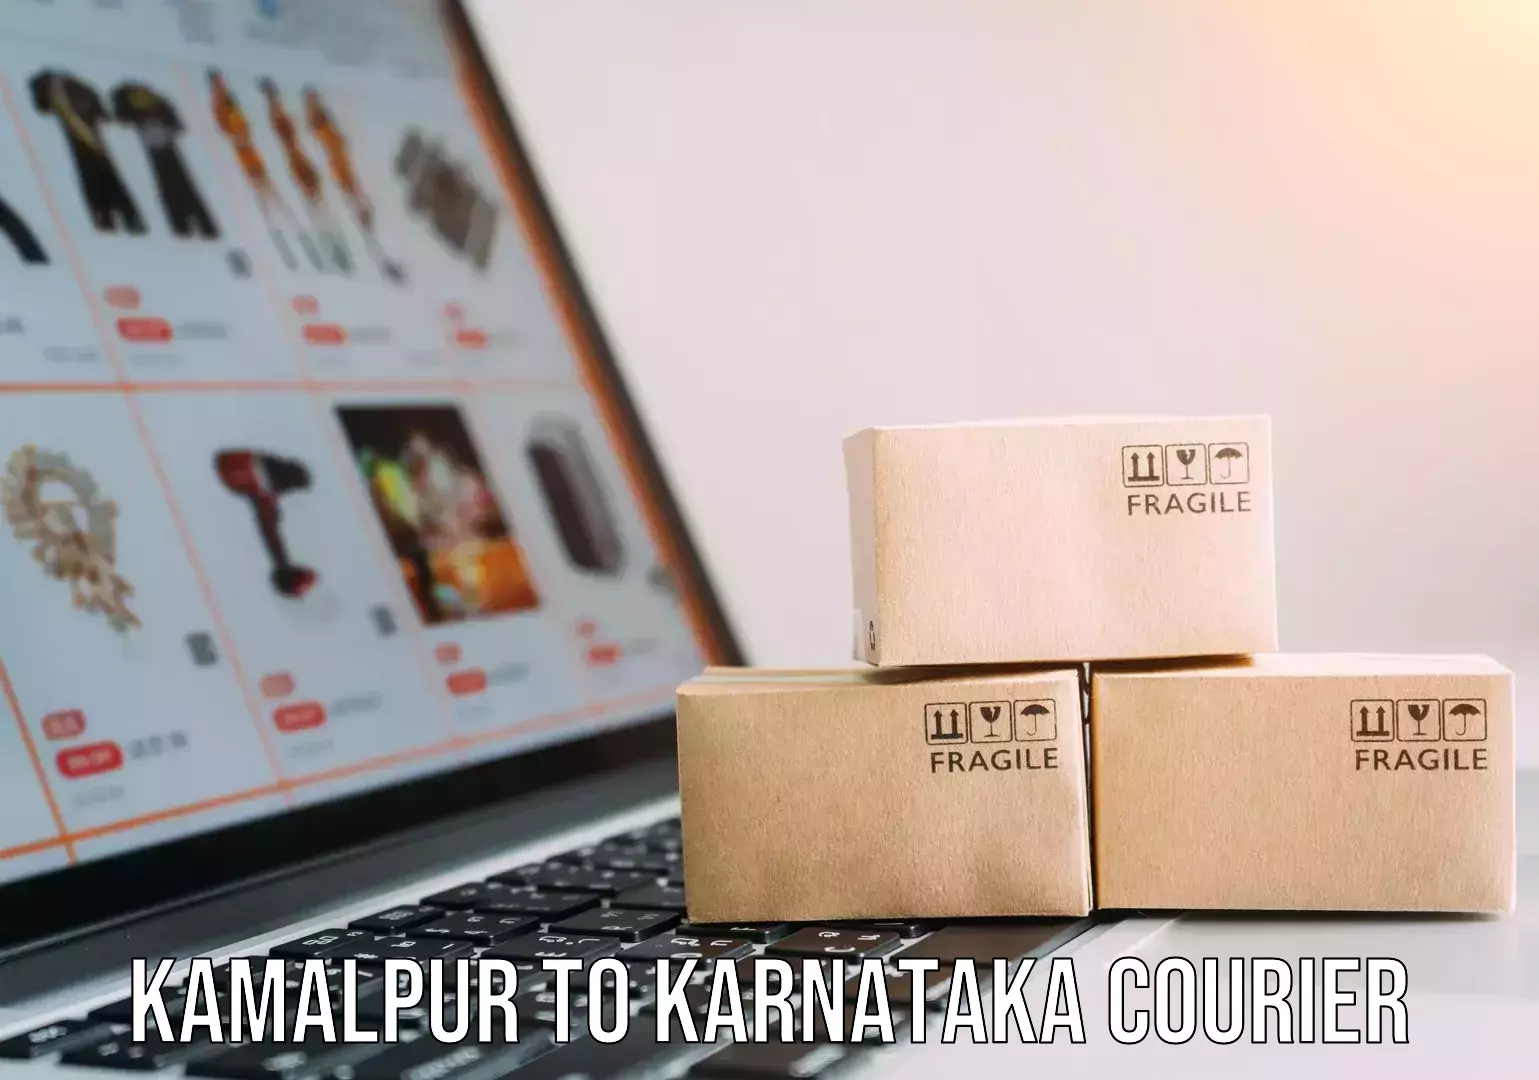 Global delivery options Kamalpur to Karnataka